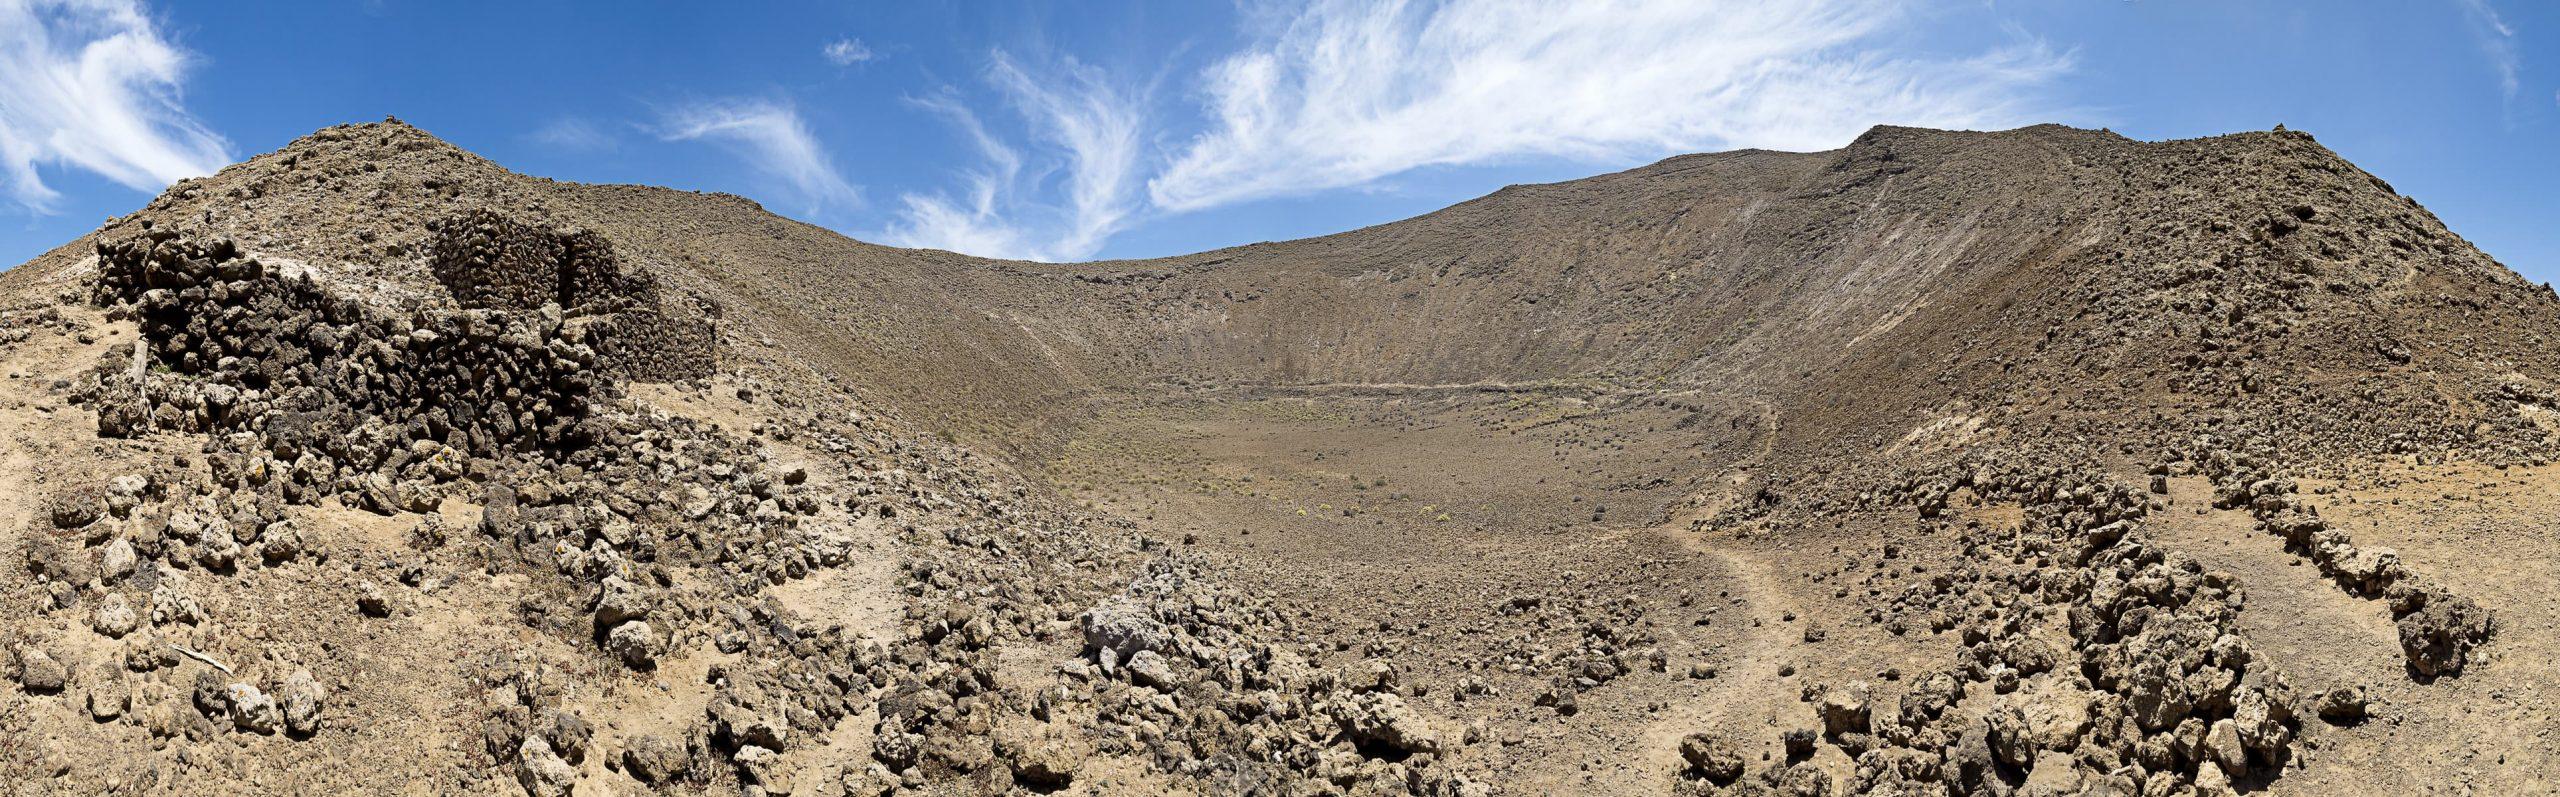 Utforska det vulkaniska undret Caldera Blanca på Lanzarote